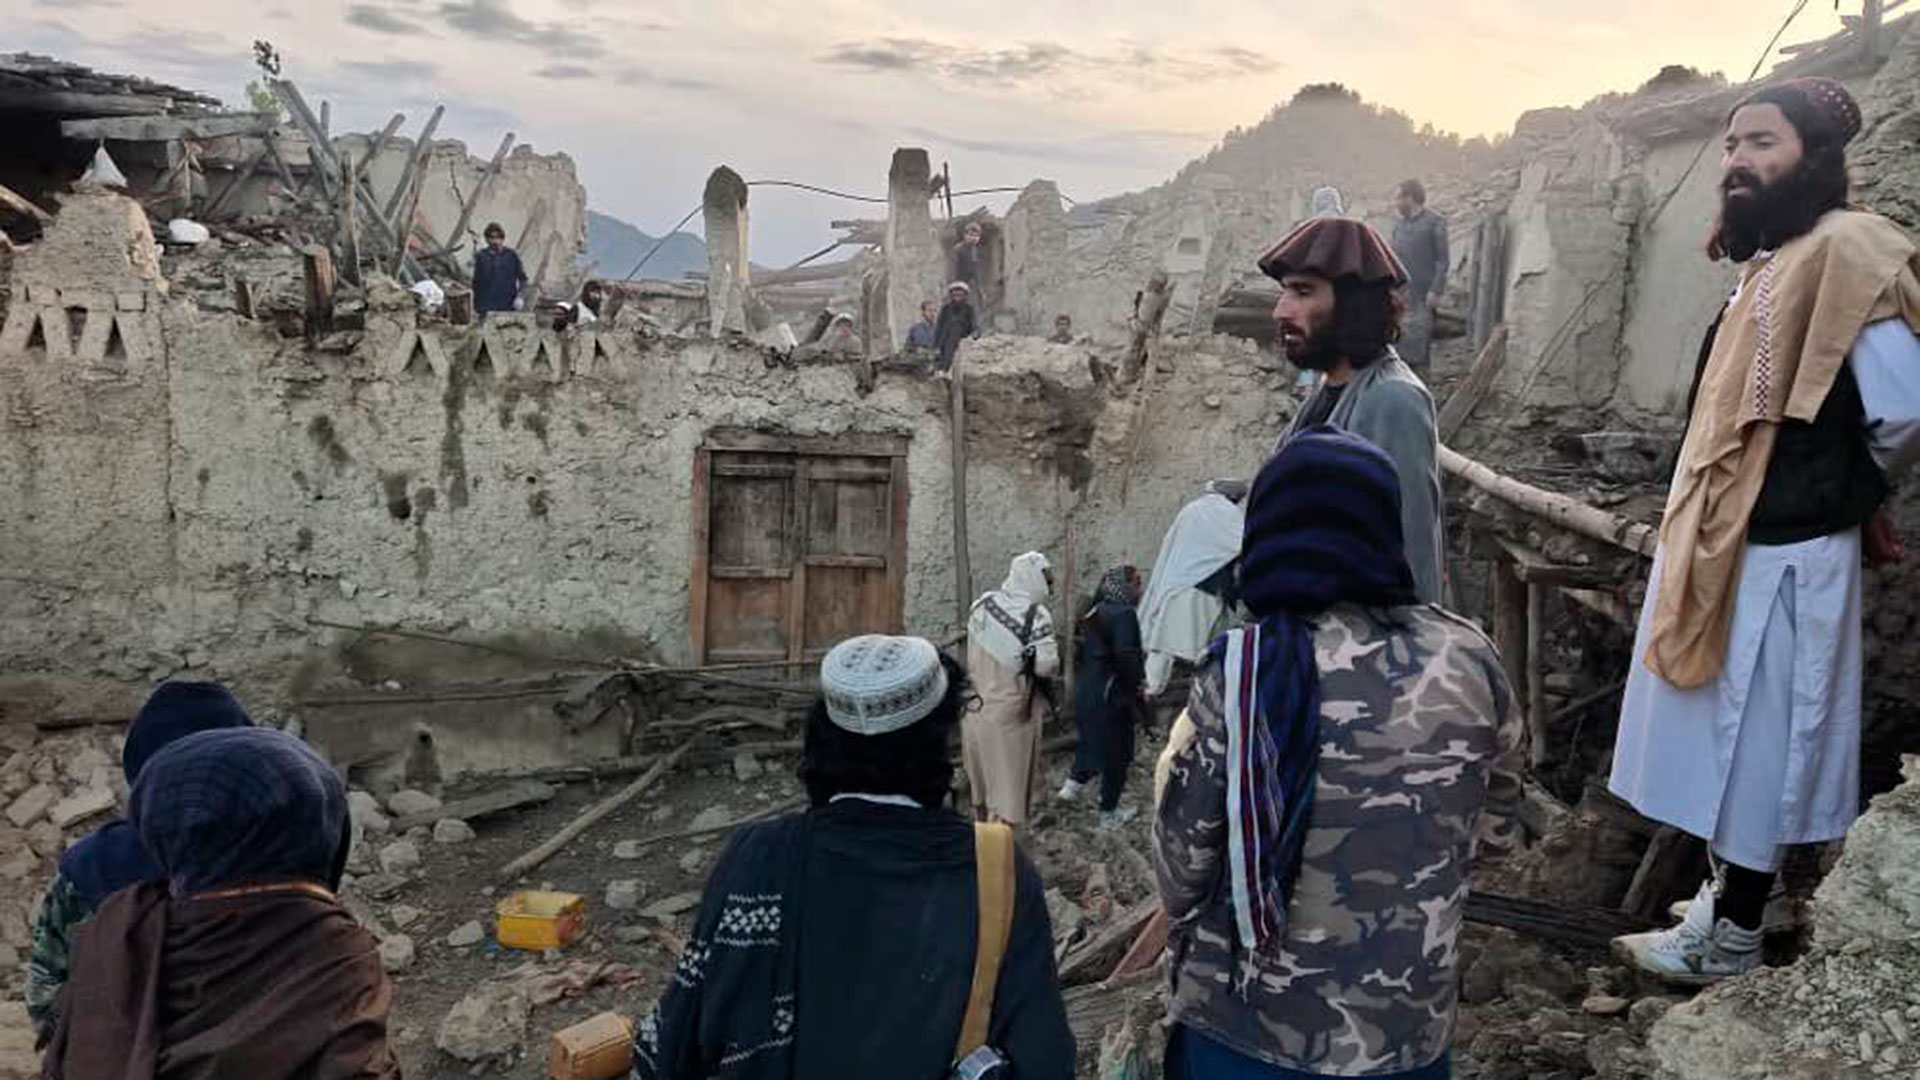 El sismo tuvo su epicentro en la provincia de Paktika, a unos 50 kilómetros (31 millas) al suroeste de la ciudad de Khost, según el Departamento Meteorológico del vecino Pakistán. Los expertos calculan su profundidad en solo 10 kilómetros (6 millas). Los terremotos superficiales tienden a causar más daño. (AP)